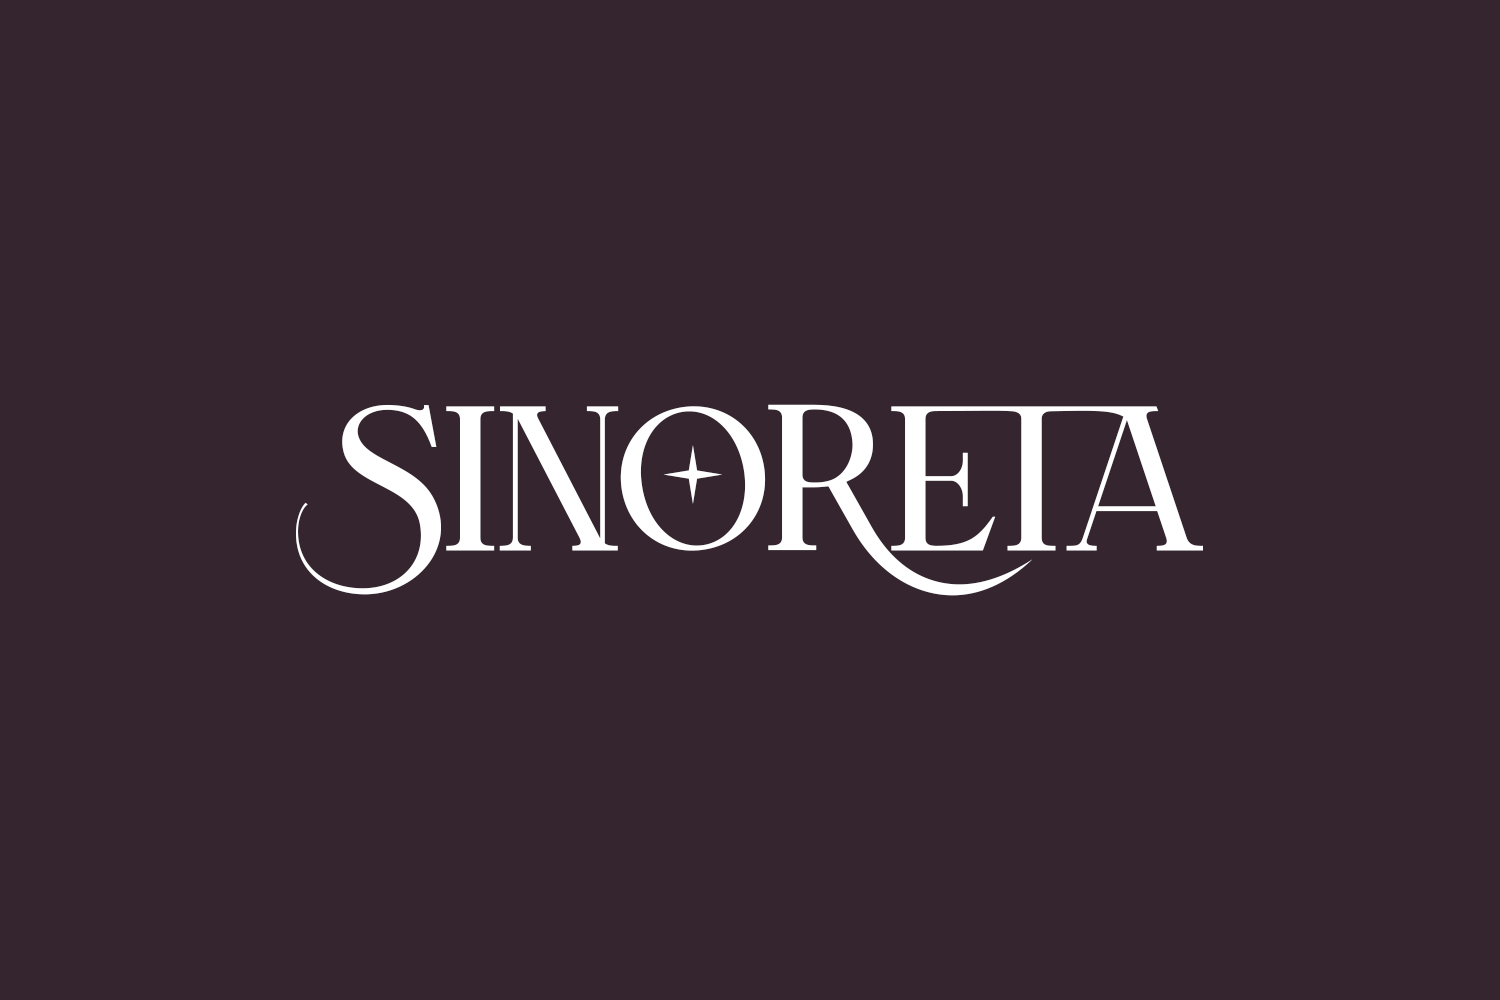 Sinoreta Free Font